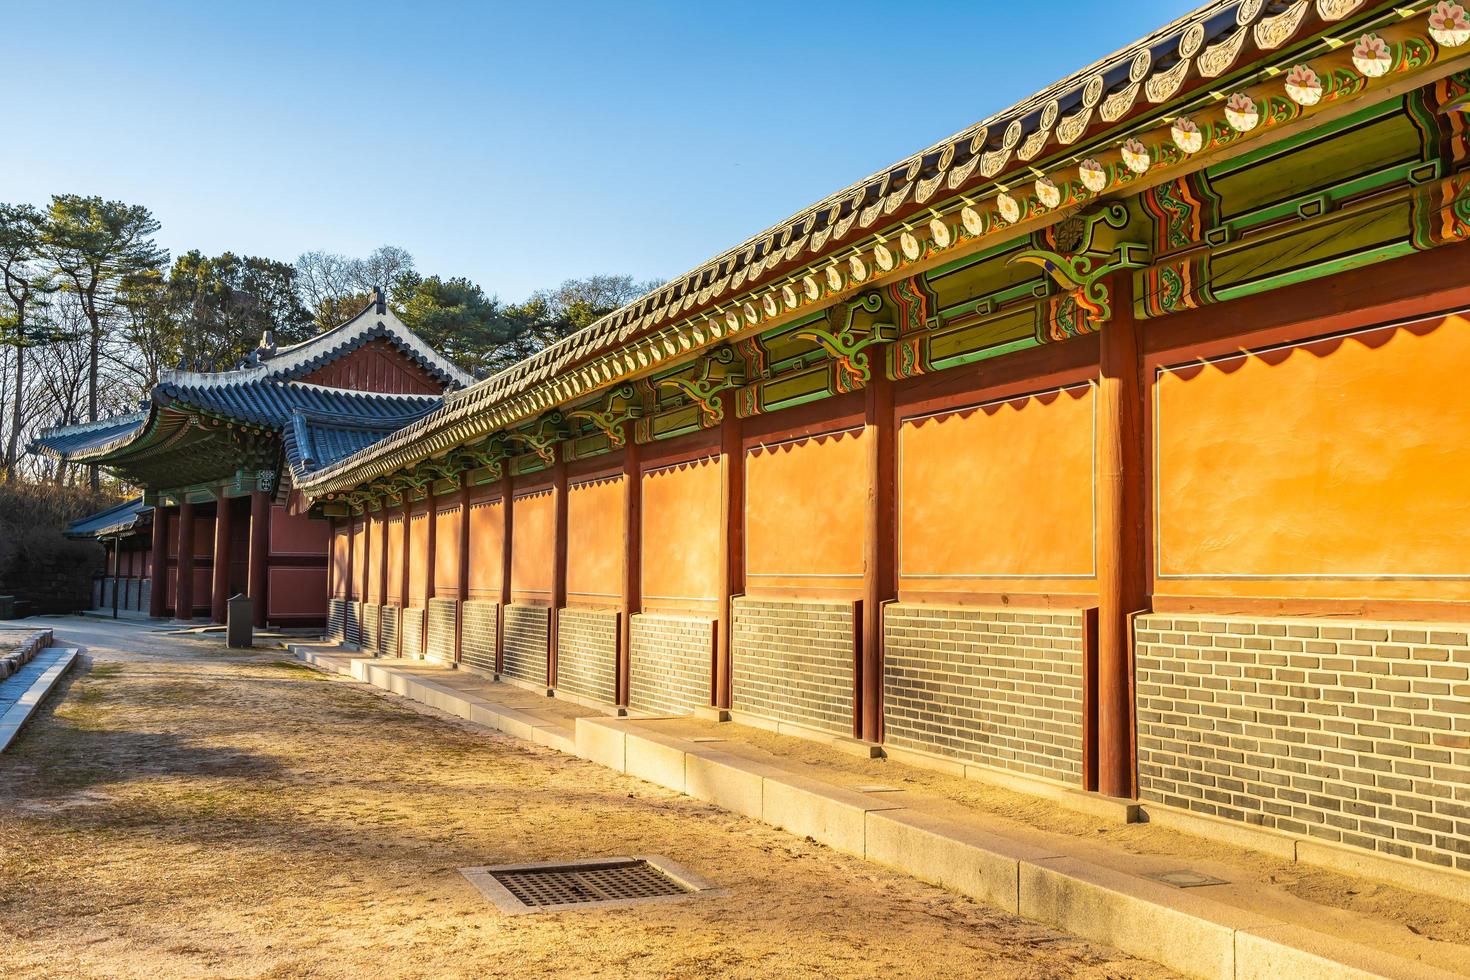 palazzo changdeokgung nella città di seoul, corea del sud foto